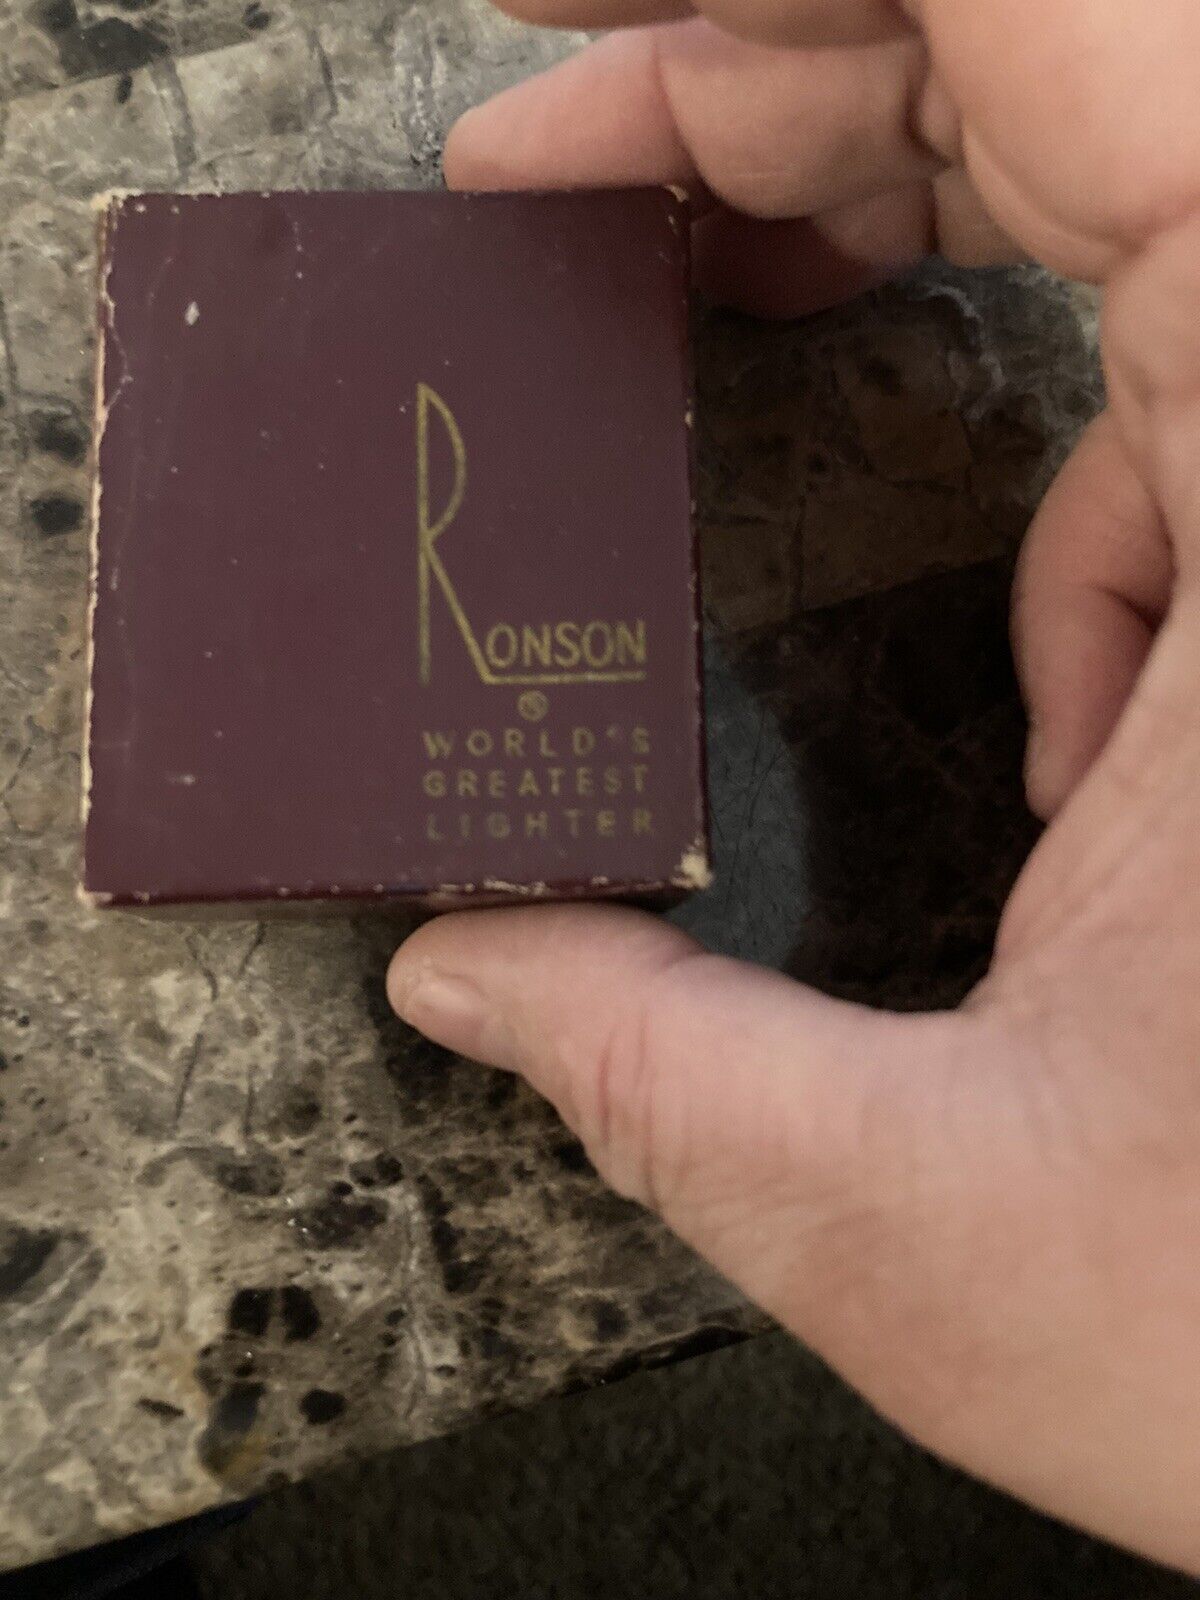 ronson lighter vintage Tlg Ingraved In It